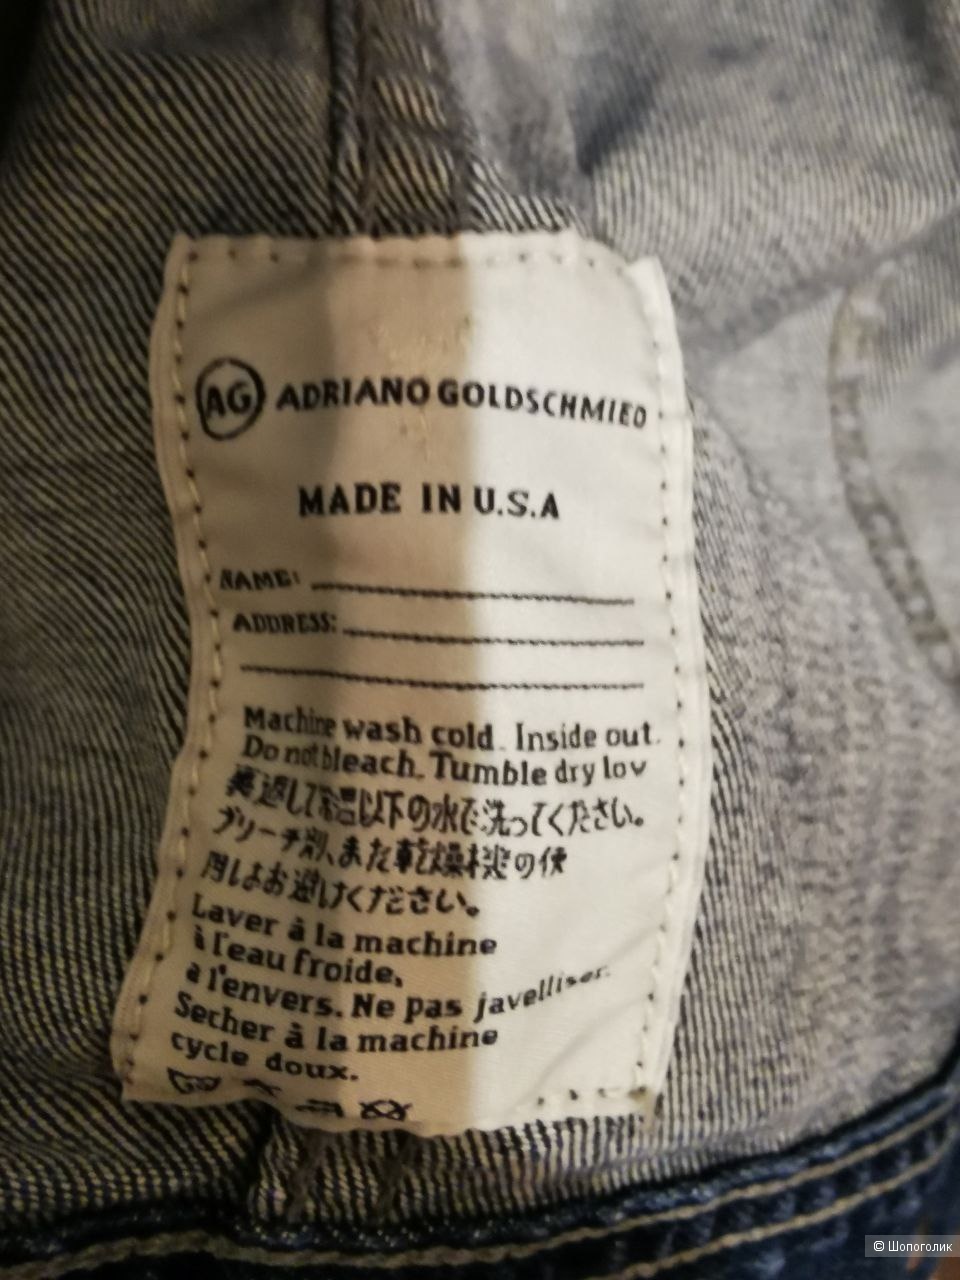 Куртка джинсовая AG ADRIANO GOLDSCHMIED размер L